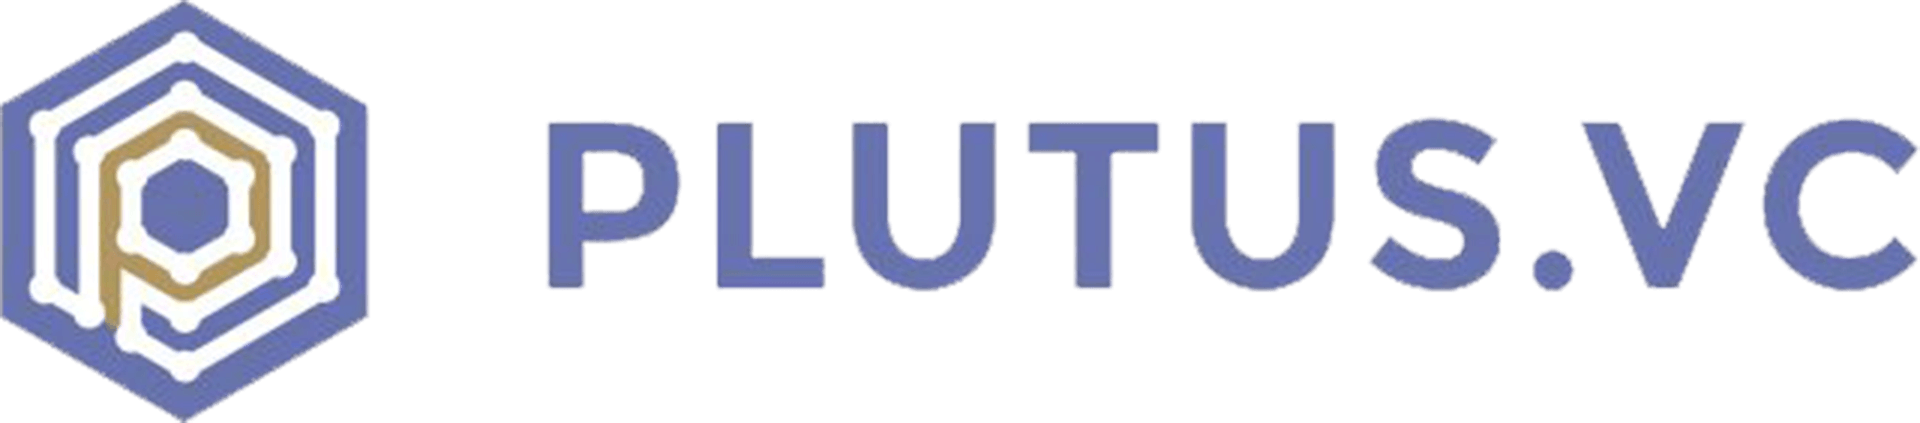 Plutus VC | Lead investor